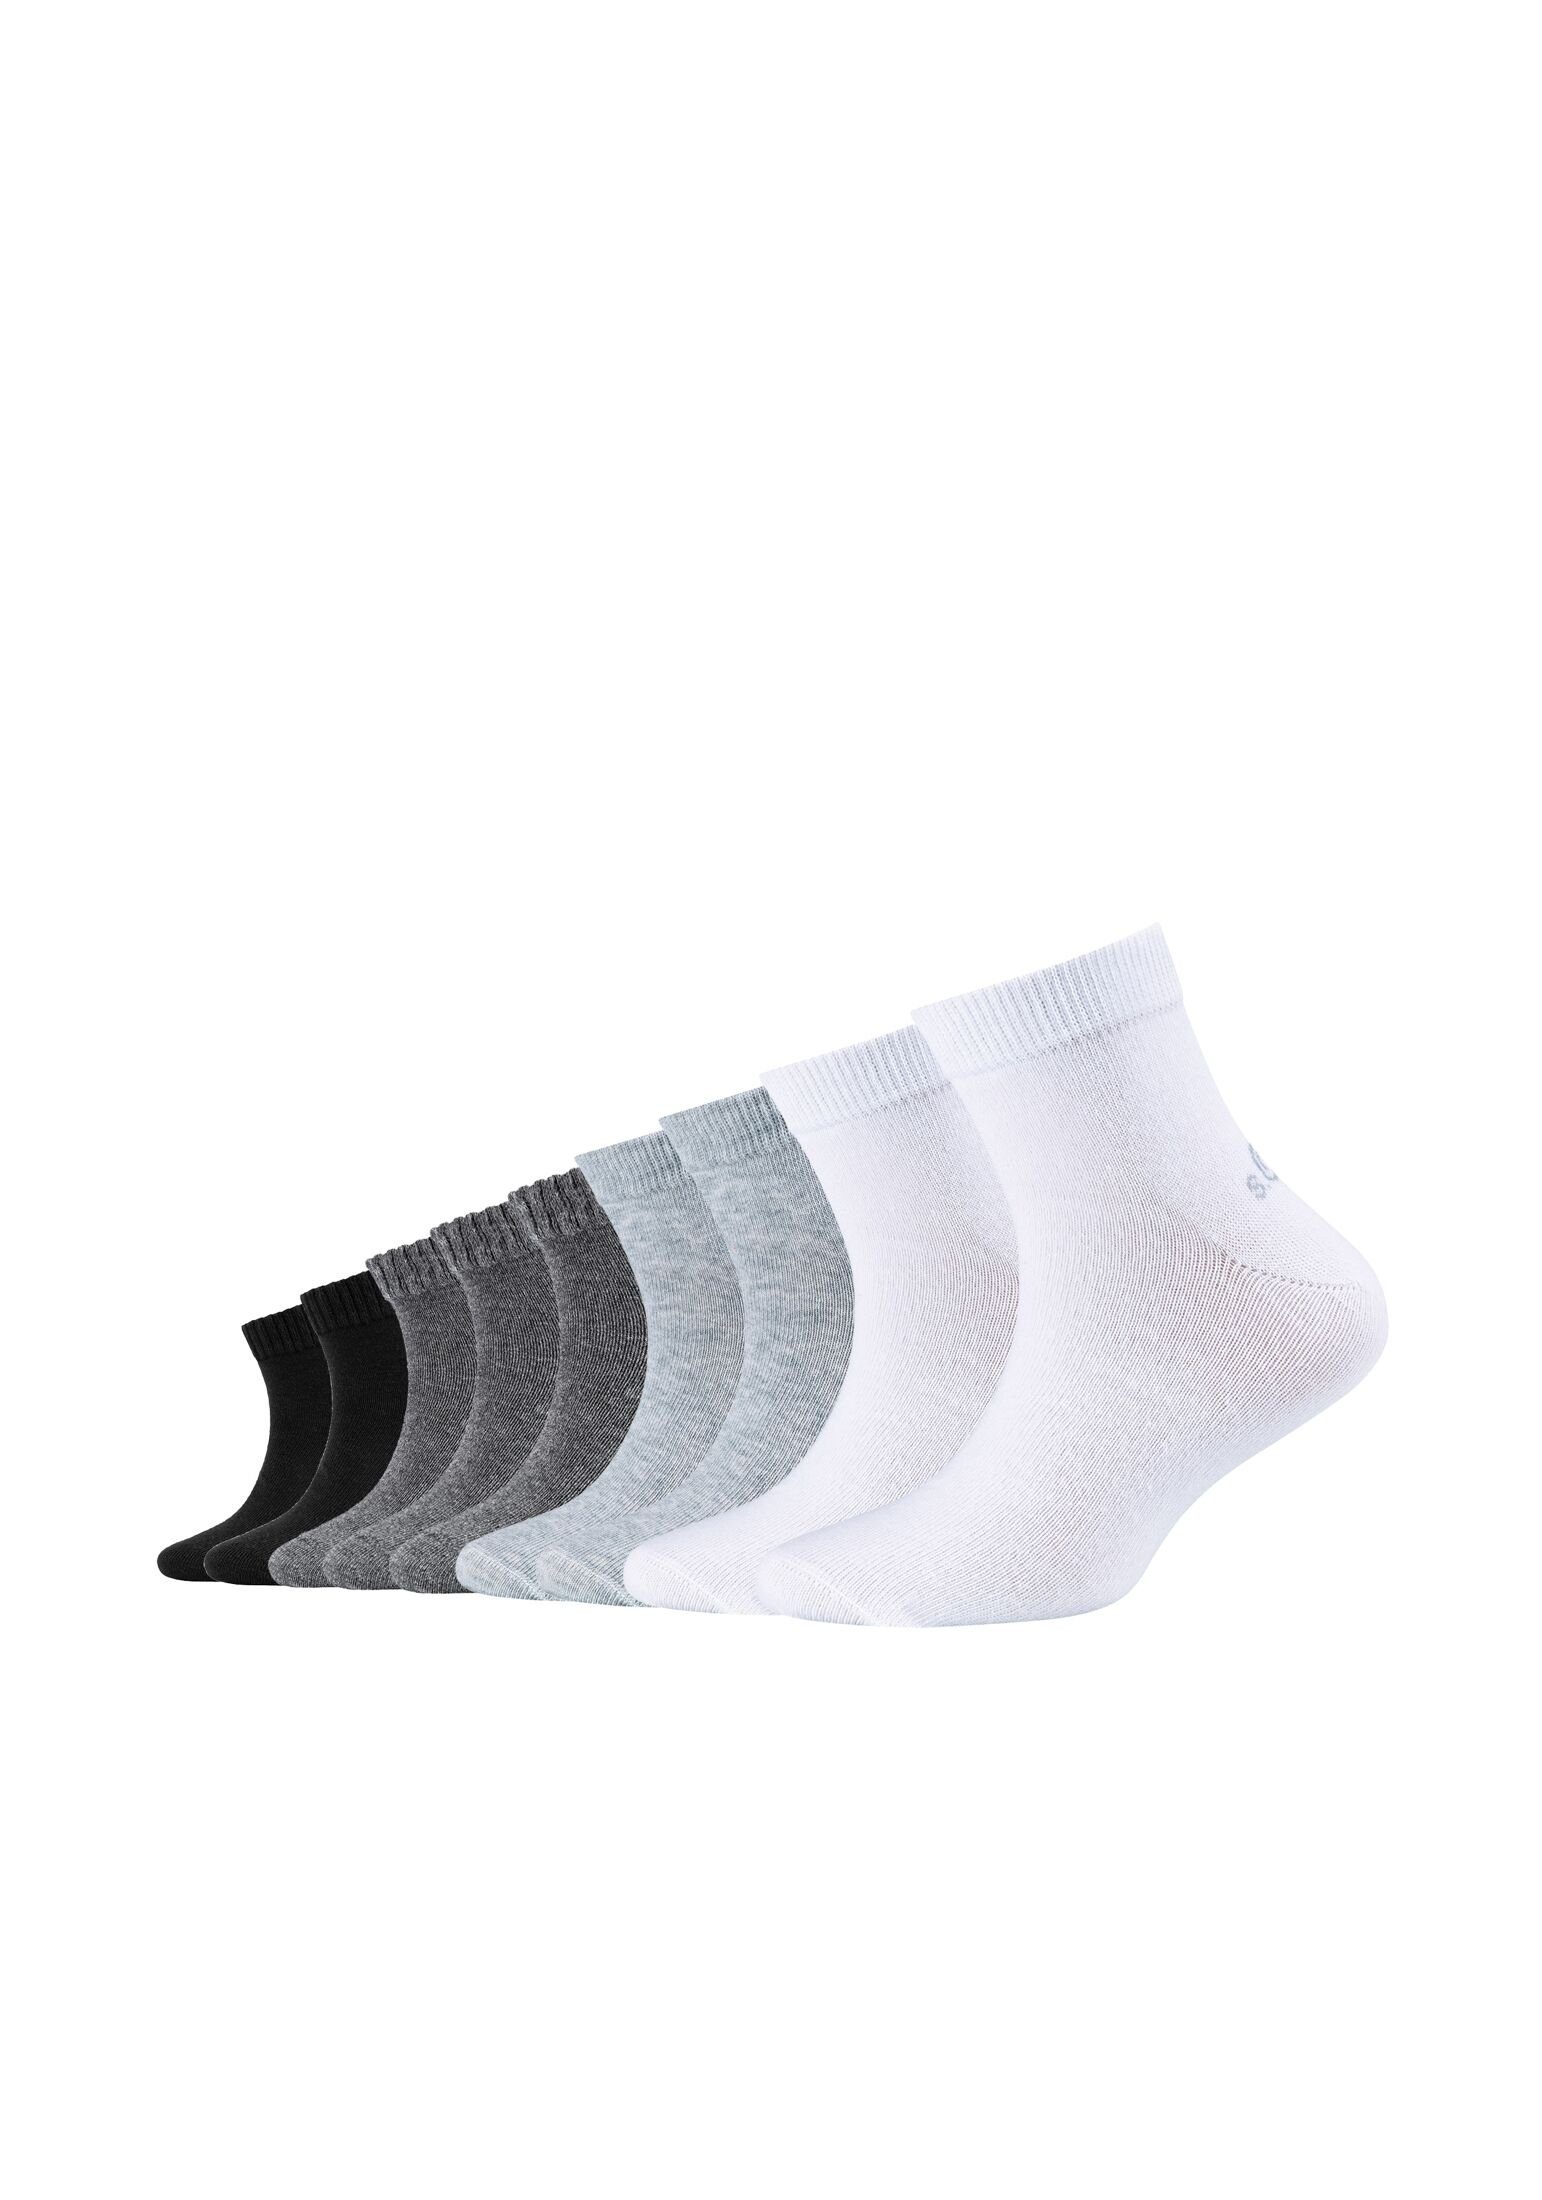 Socken 9er in Farben verschiedenen s.Oliver 9er-Mehrfachpackung Praktische (9-Paar) Pack,